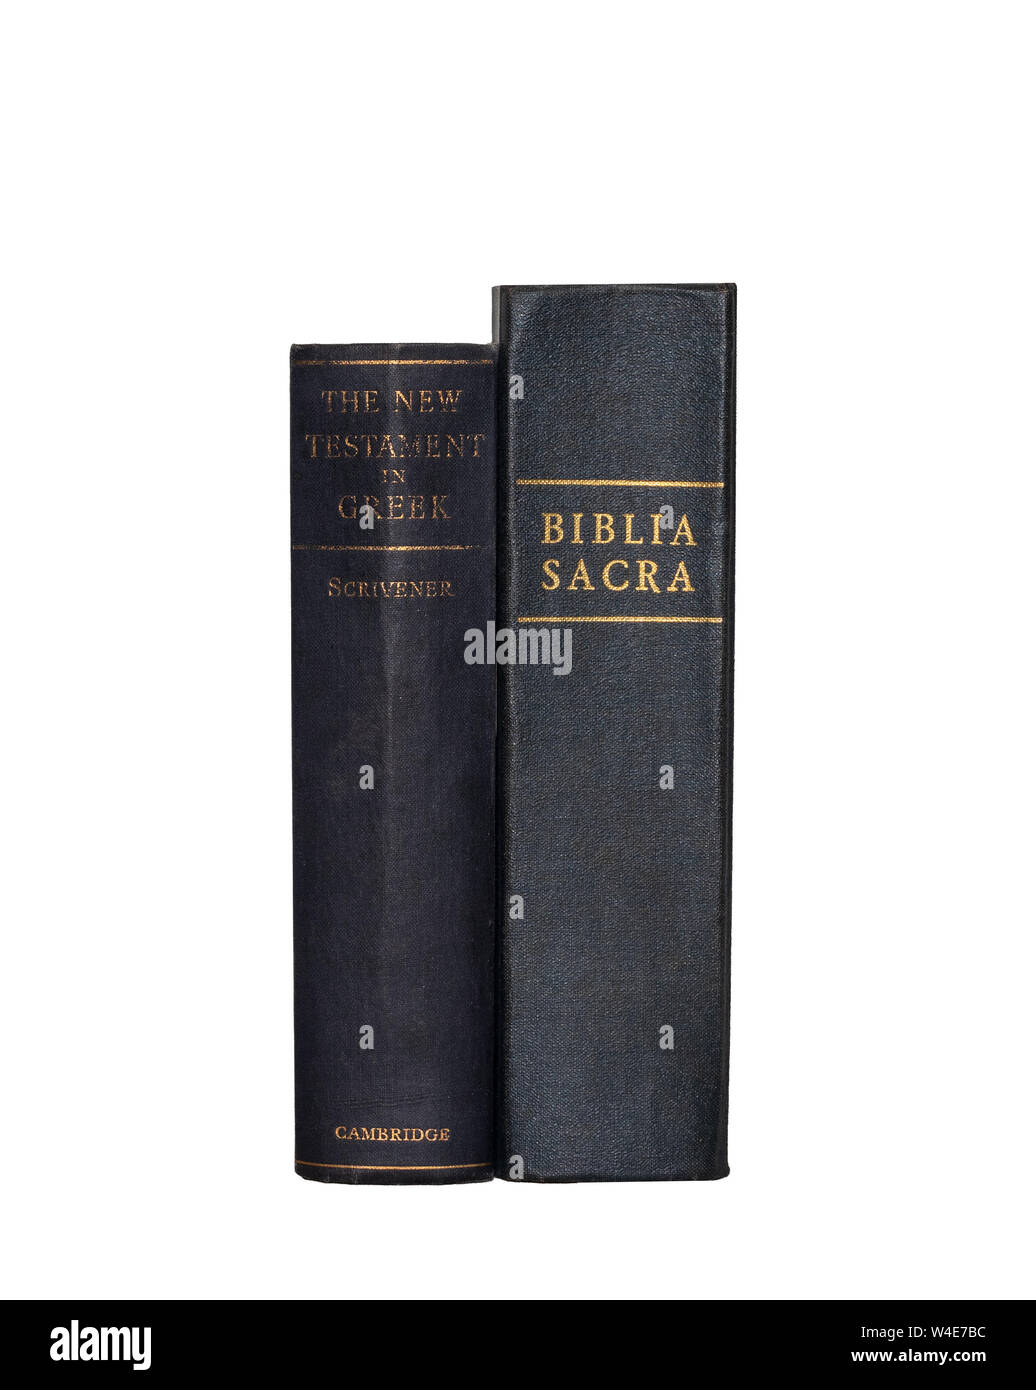 Livre de droit : Latin Vulgate et Nouveau Testament Grec, montrant des épines, isolé sur fond blanc Banque D'Images